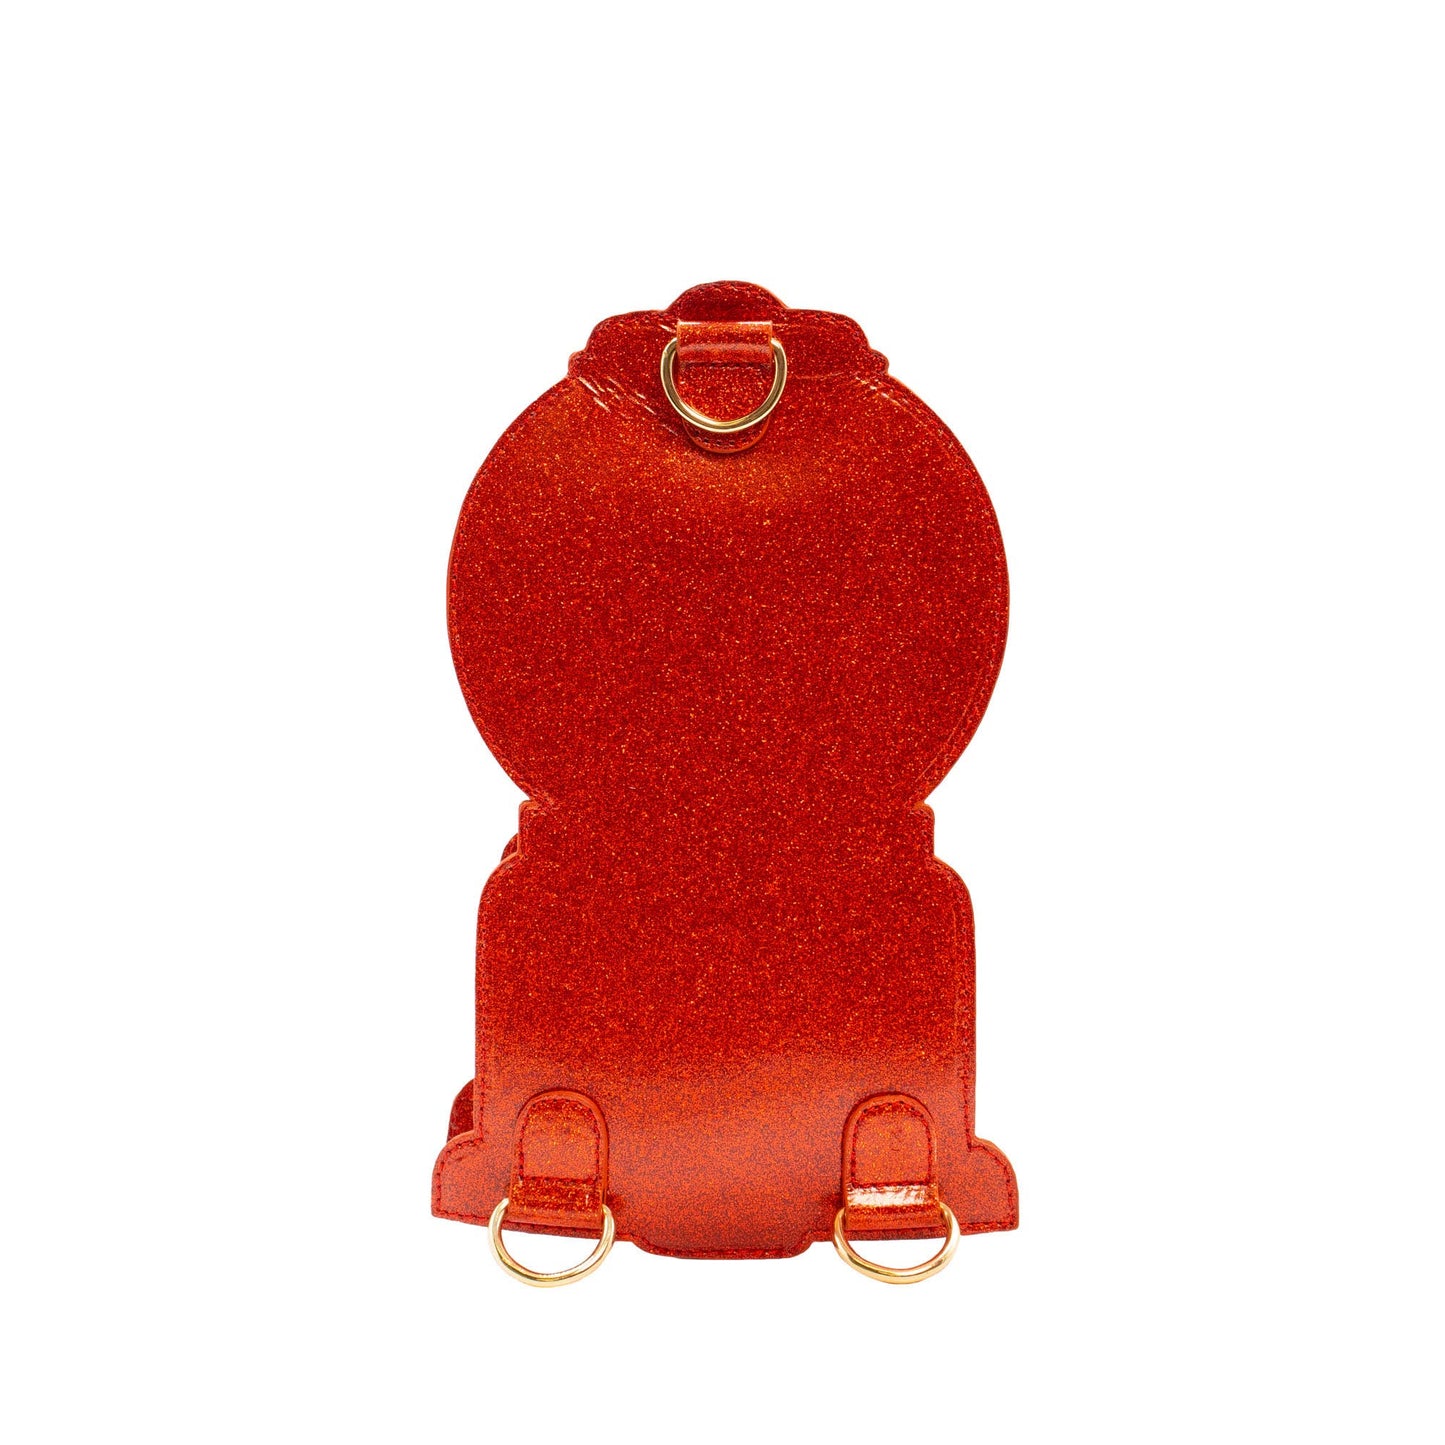 Handbag - Gumball Machine (Red)